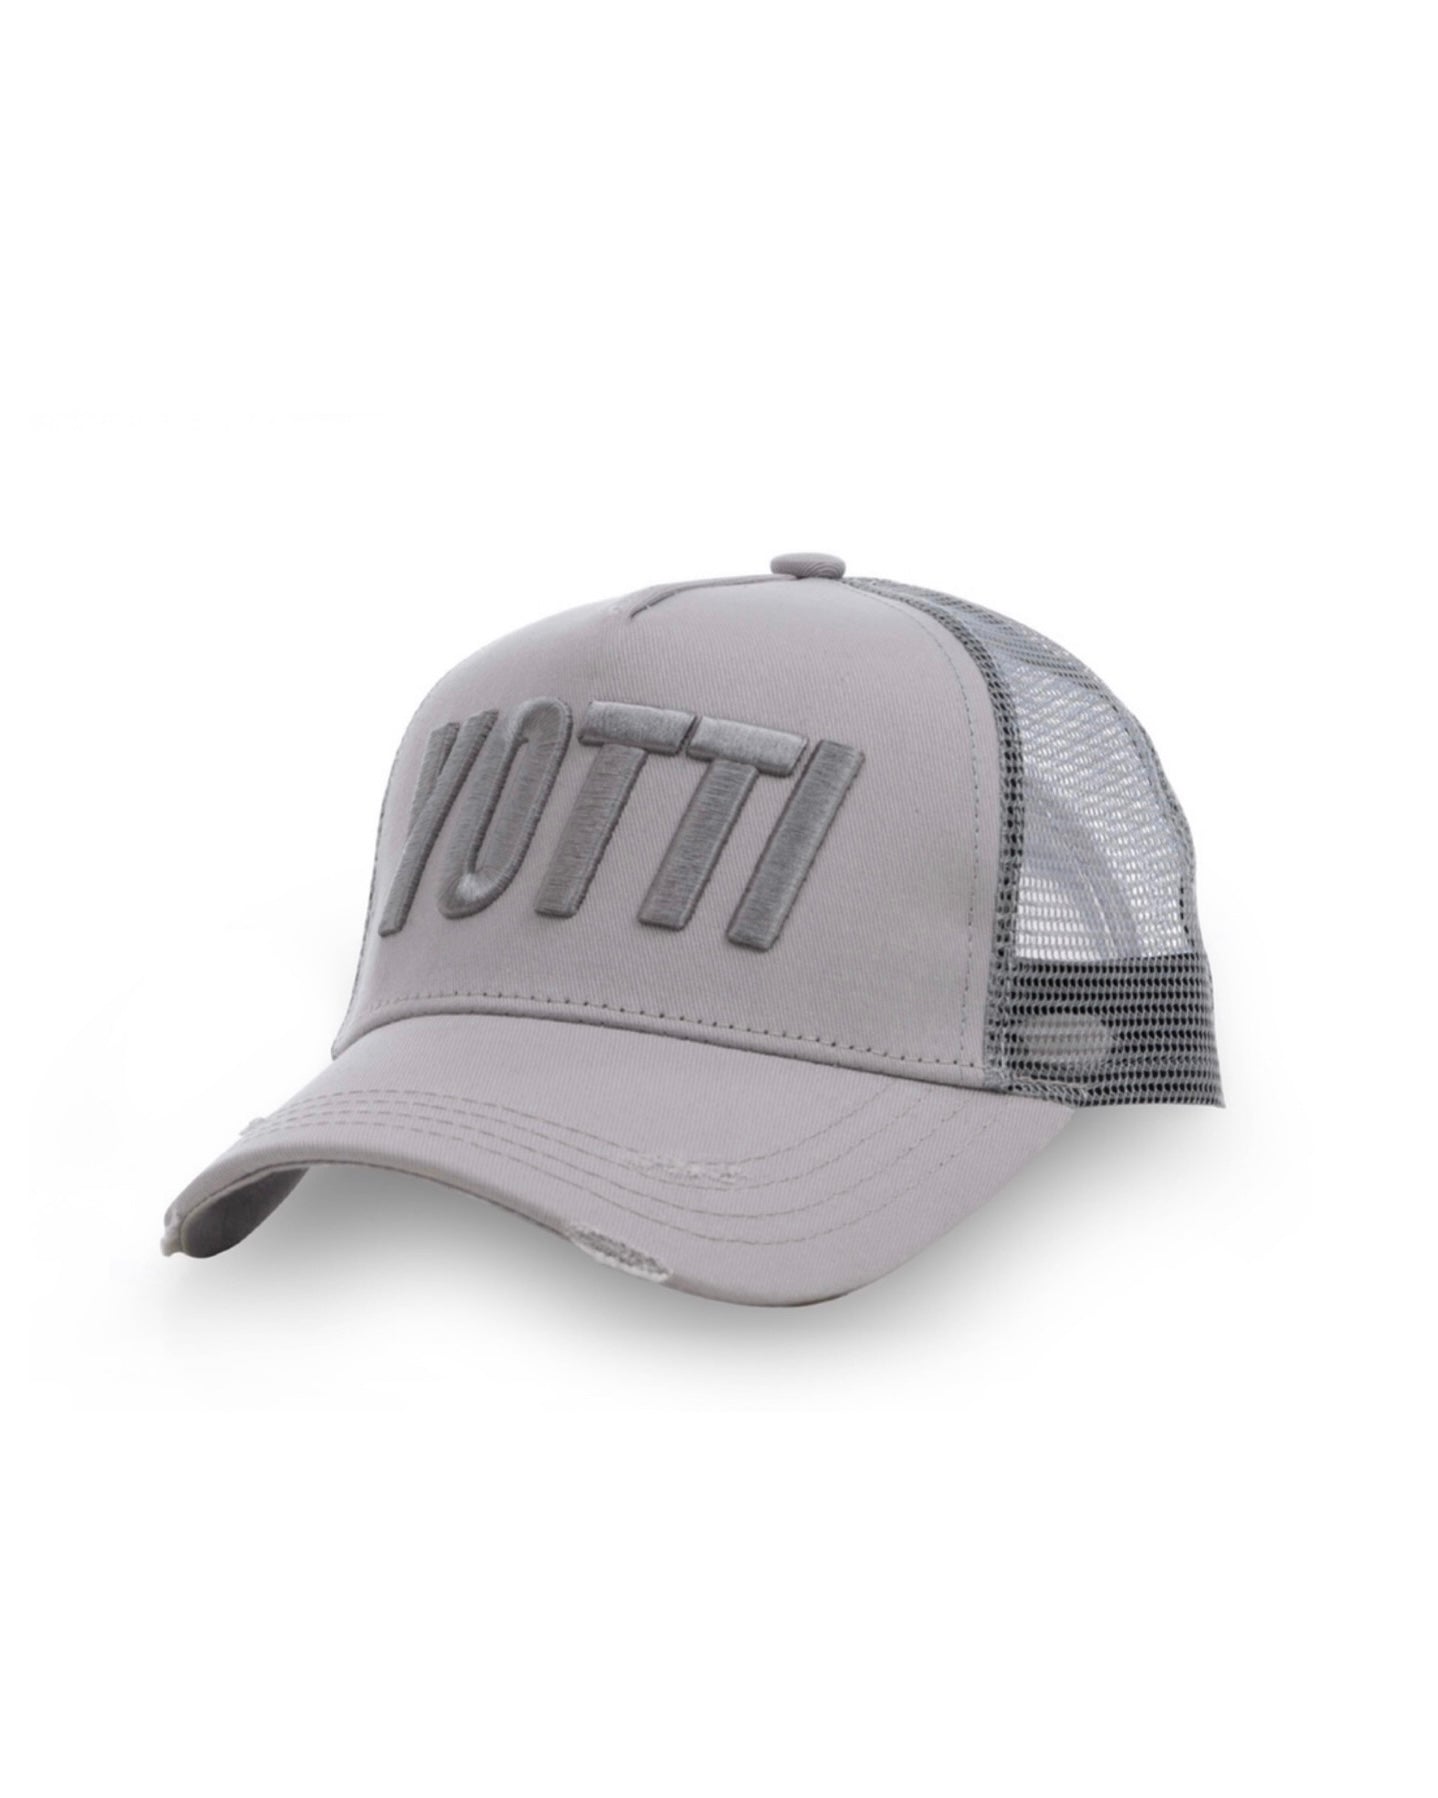 Yotti Logo Trucker | Grey/Silver